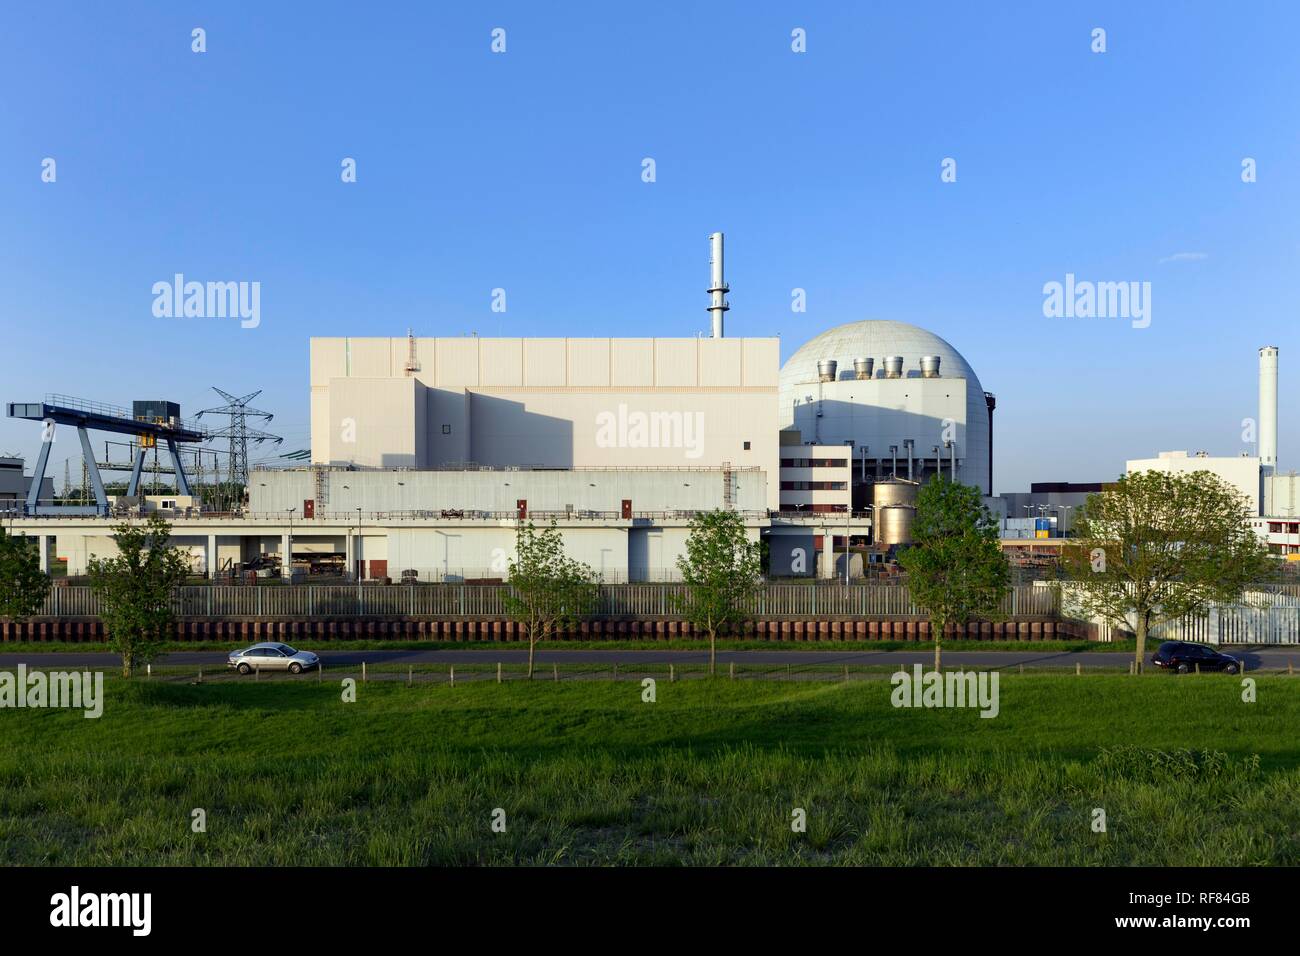 La planta de energía nuclear de Brokdorf, Brokdorf, distrito de Steinburg, Schleswig-Holstein, Alemania Foto de stock